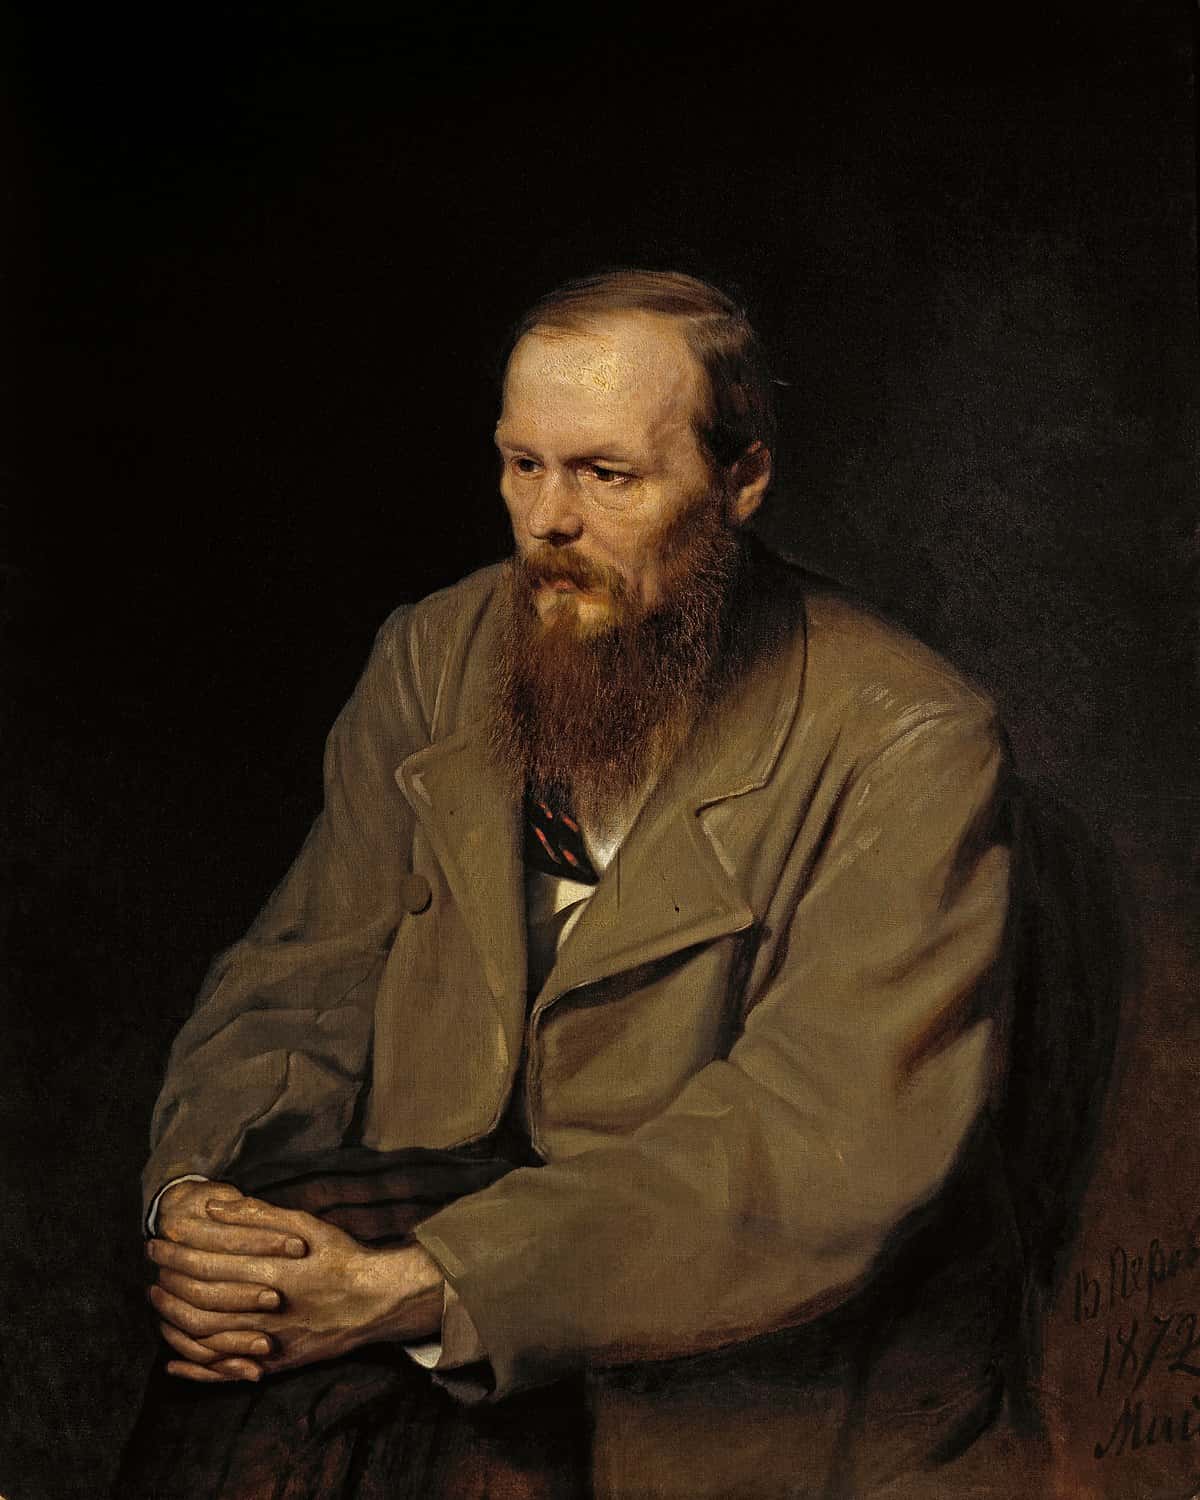 Yazar Fyodor Dostoevsky